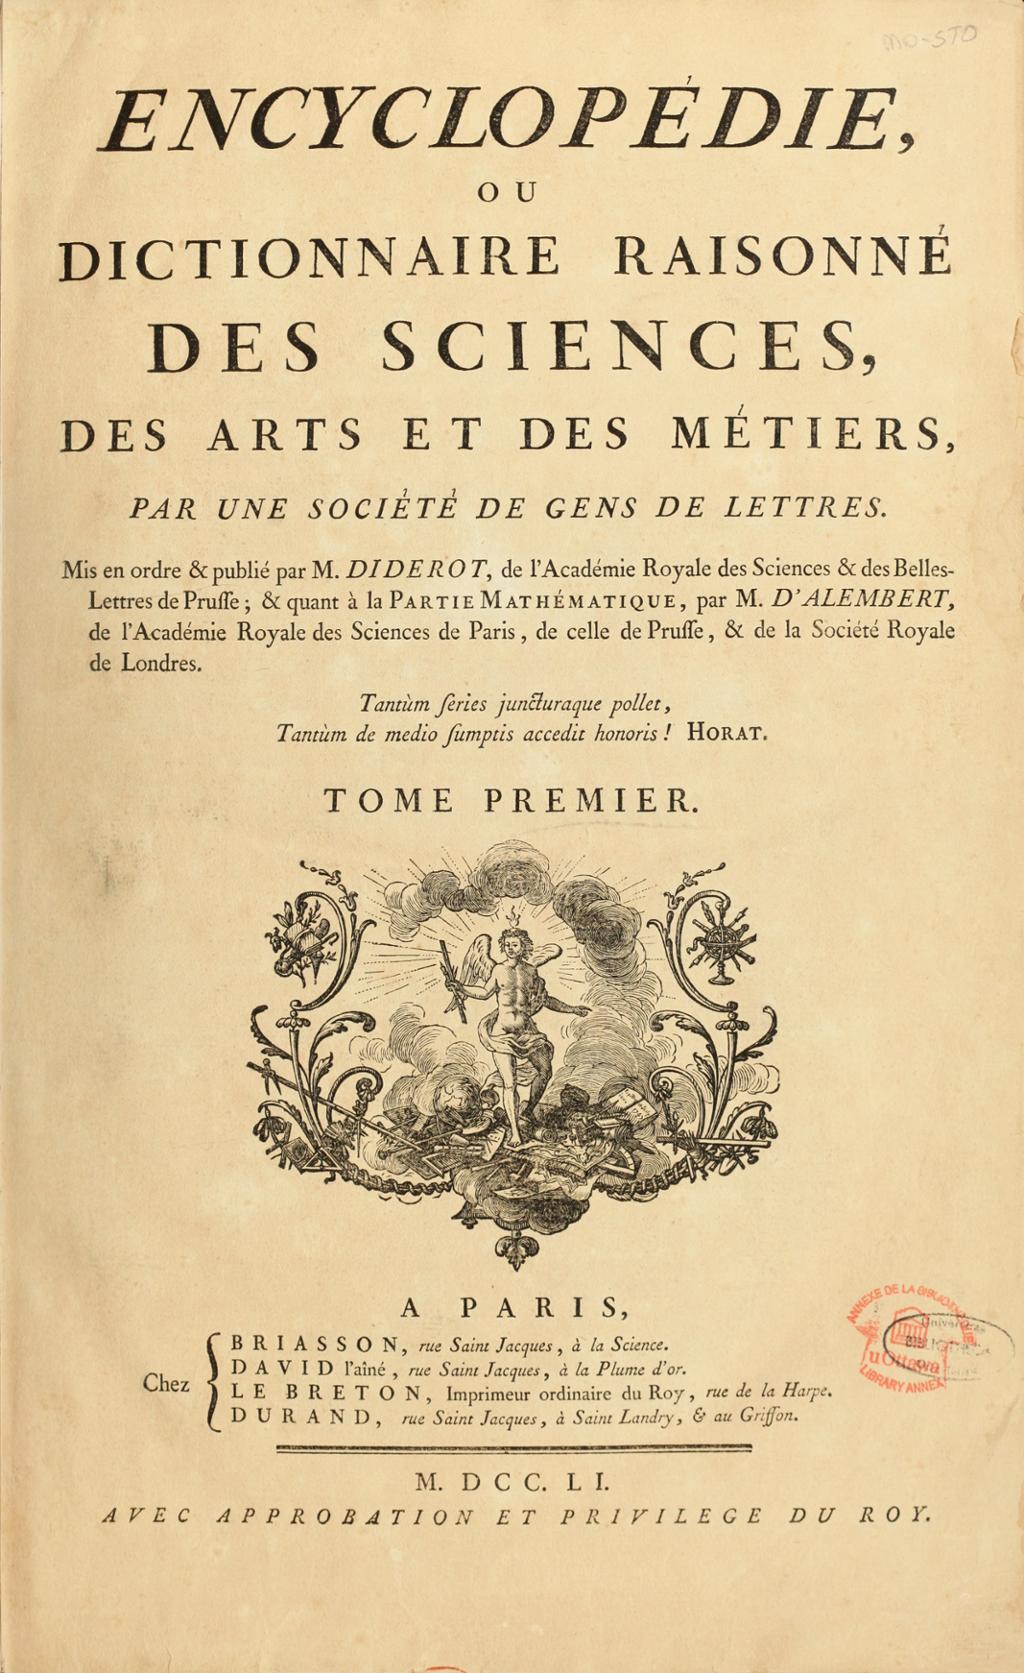 Forsida til den første encyklopedi, av Denis Diderot. Overskrift, underoverskrift og informasjon står på fransk. Illustrert med et snitt av en engel. Foto.